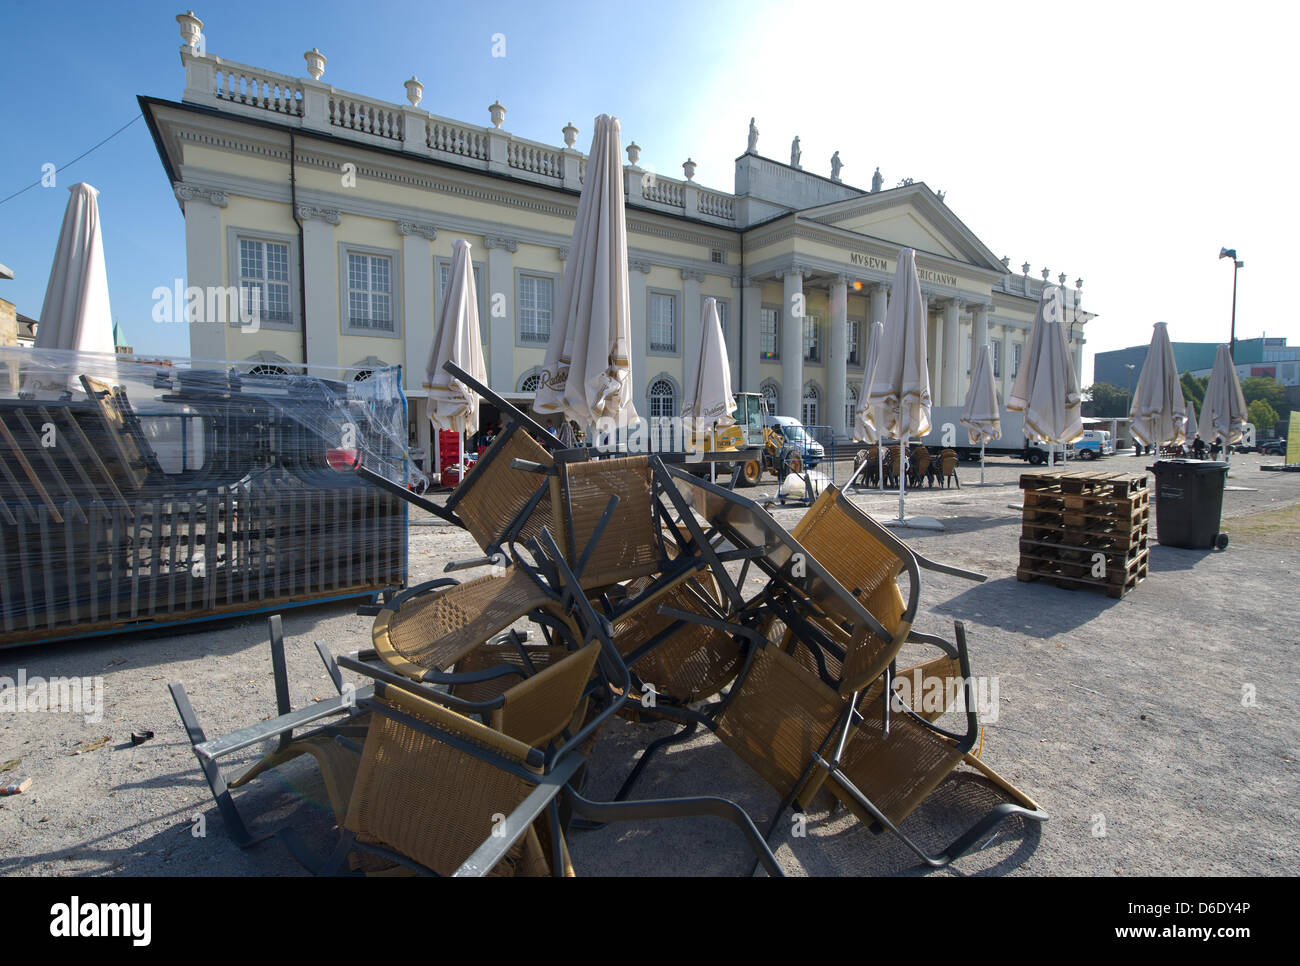 Stühle werden übereinander gestapelt einen Tag nach die Kunst Ausstellung Documenta (13) in Kassel, Deutschland, 17. September 2012 geschlossen wurde. Documenta (14) wird im Jahr 2017 stattfinden. Foto: UWE ZUCCHI Stockfoto